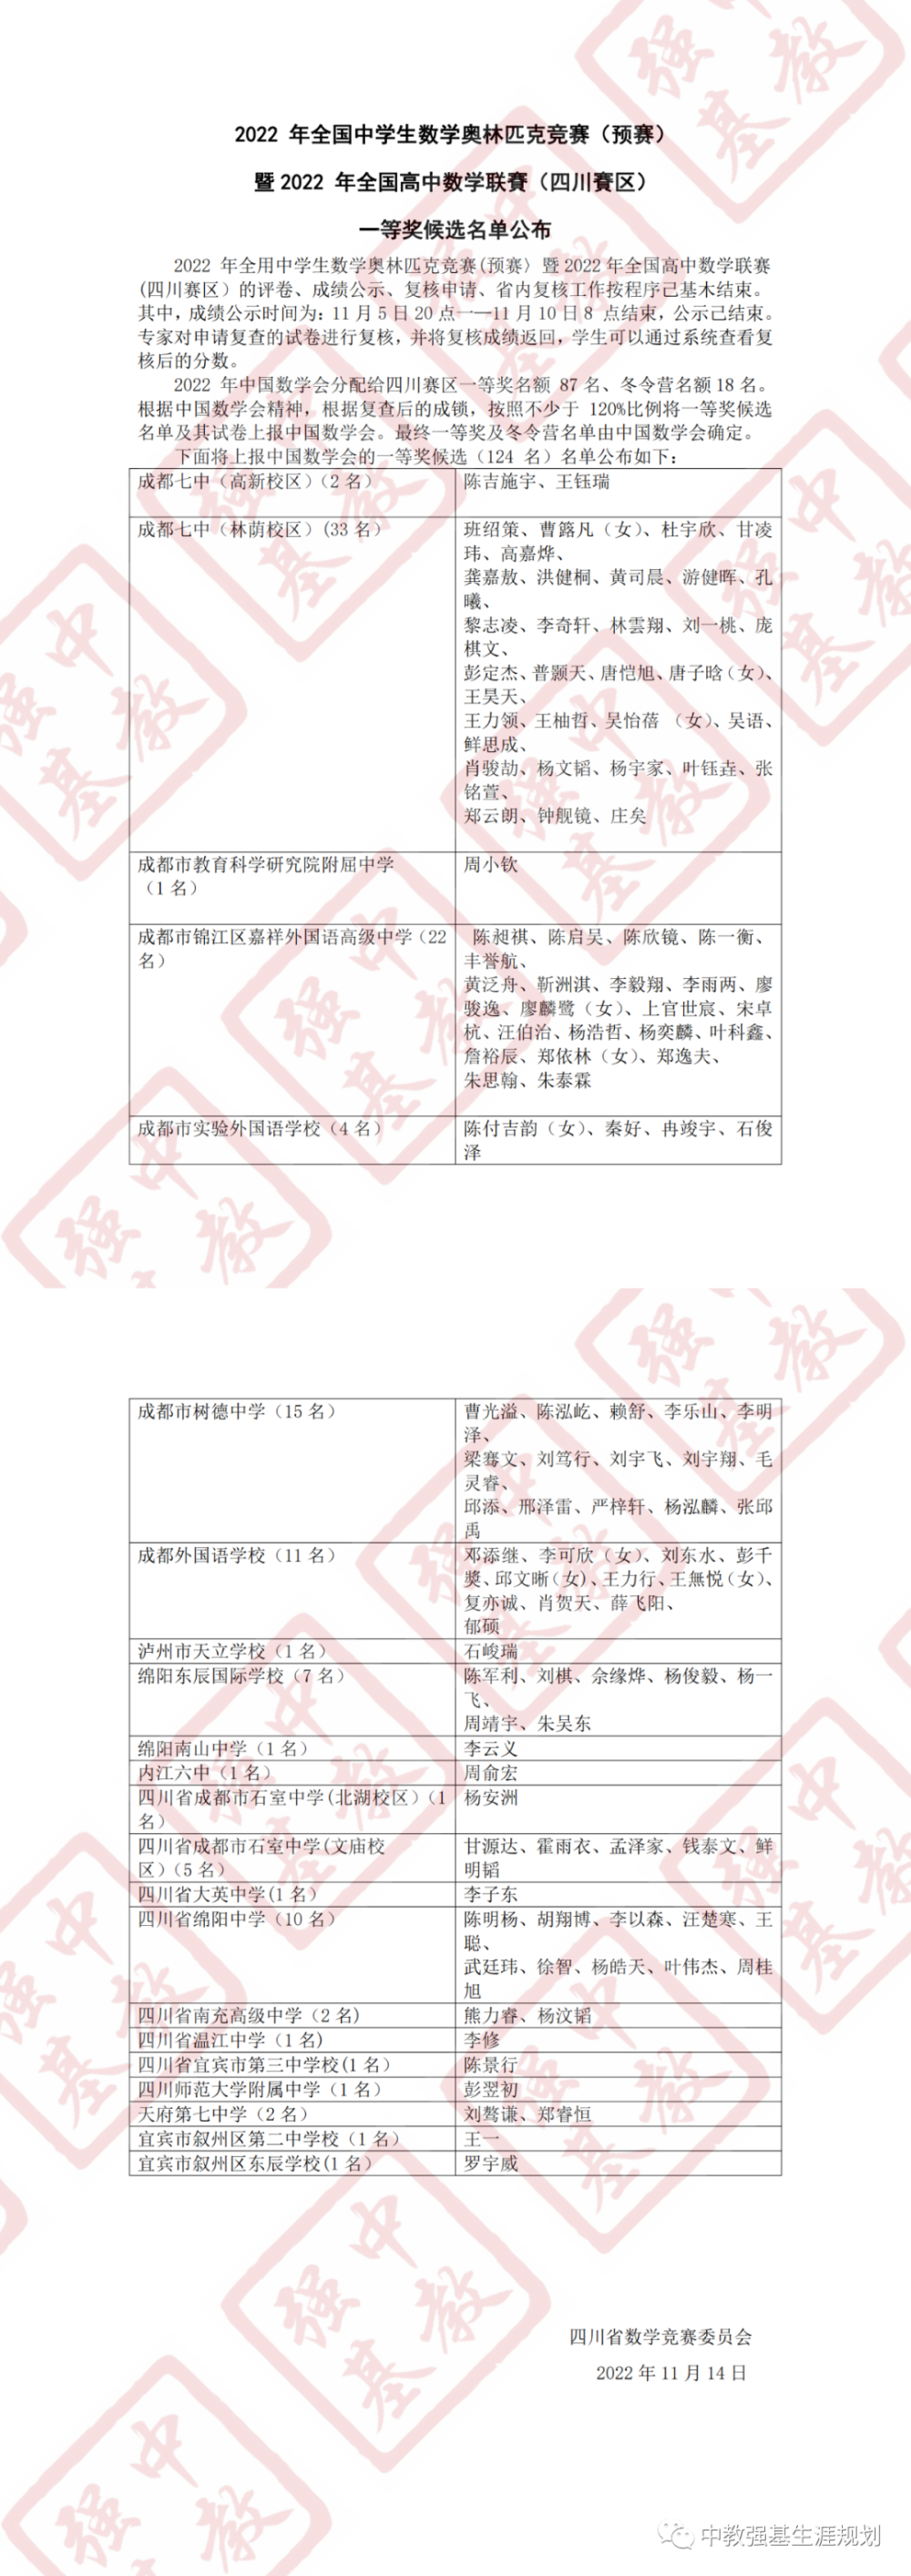 22年数学高联四川省一等奖候选名单公布 来看学霸在哪里 腾讯新闻